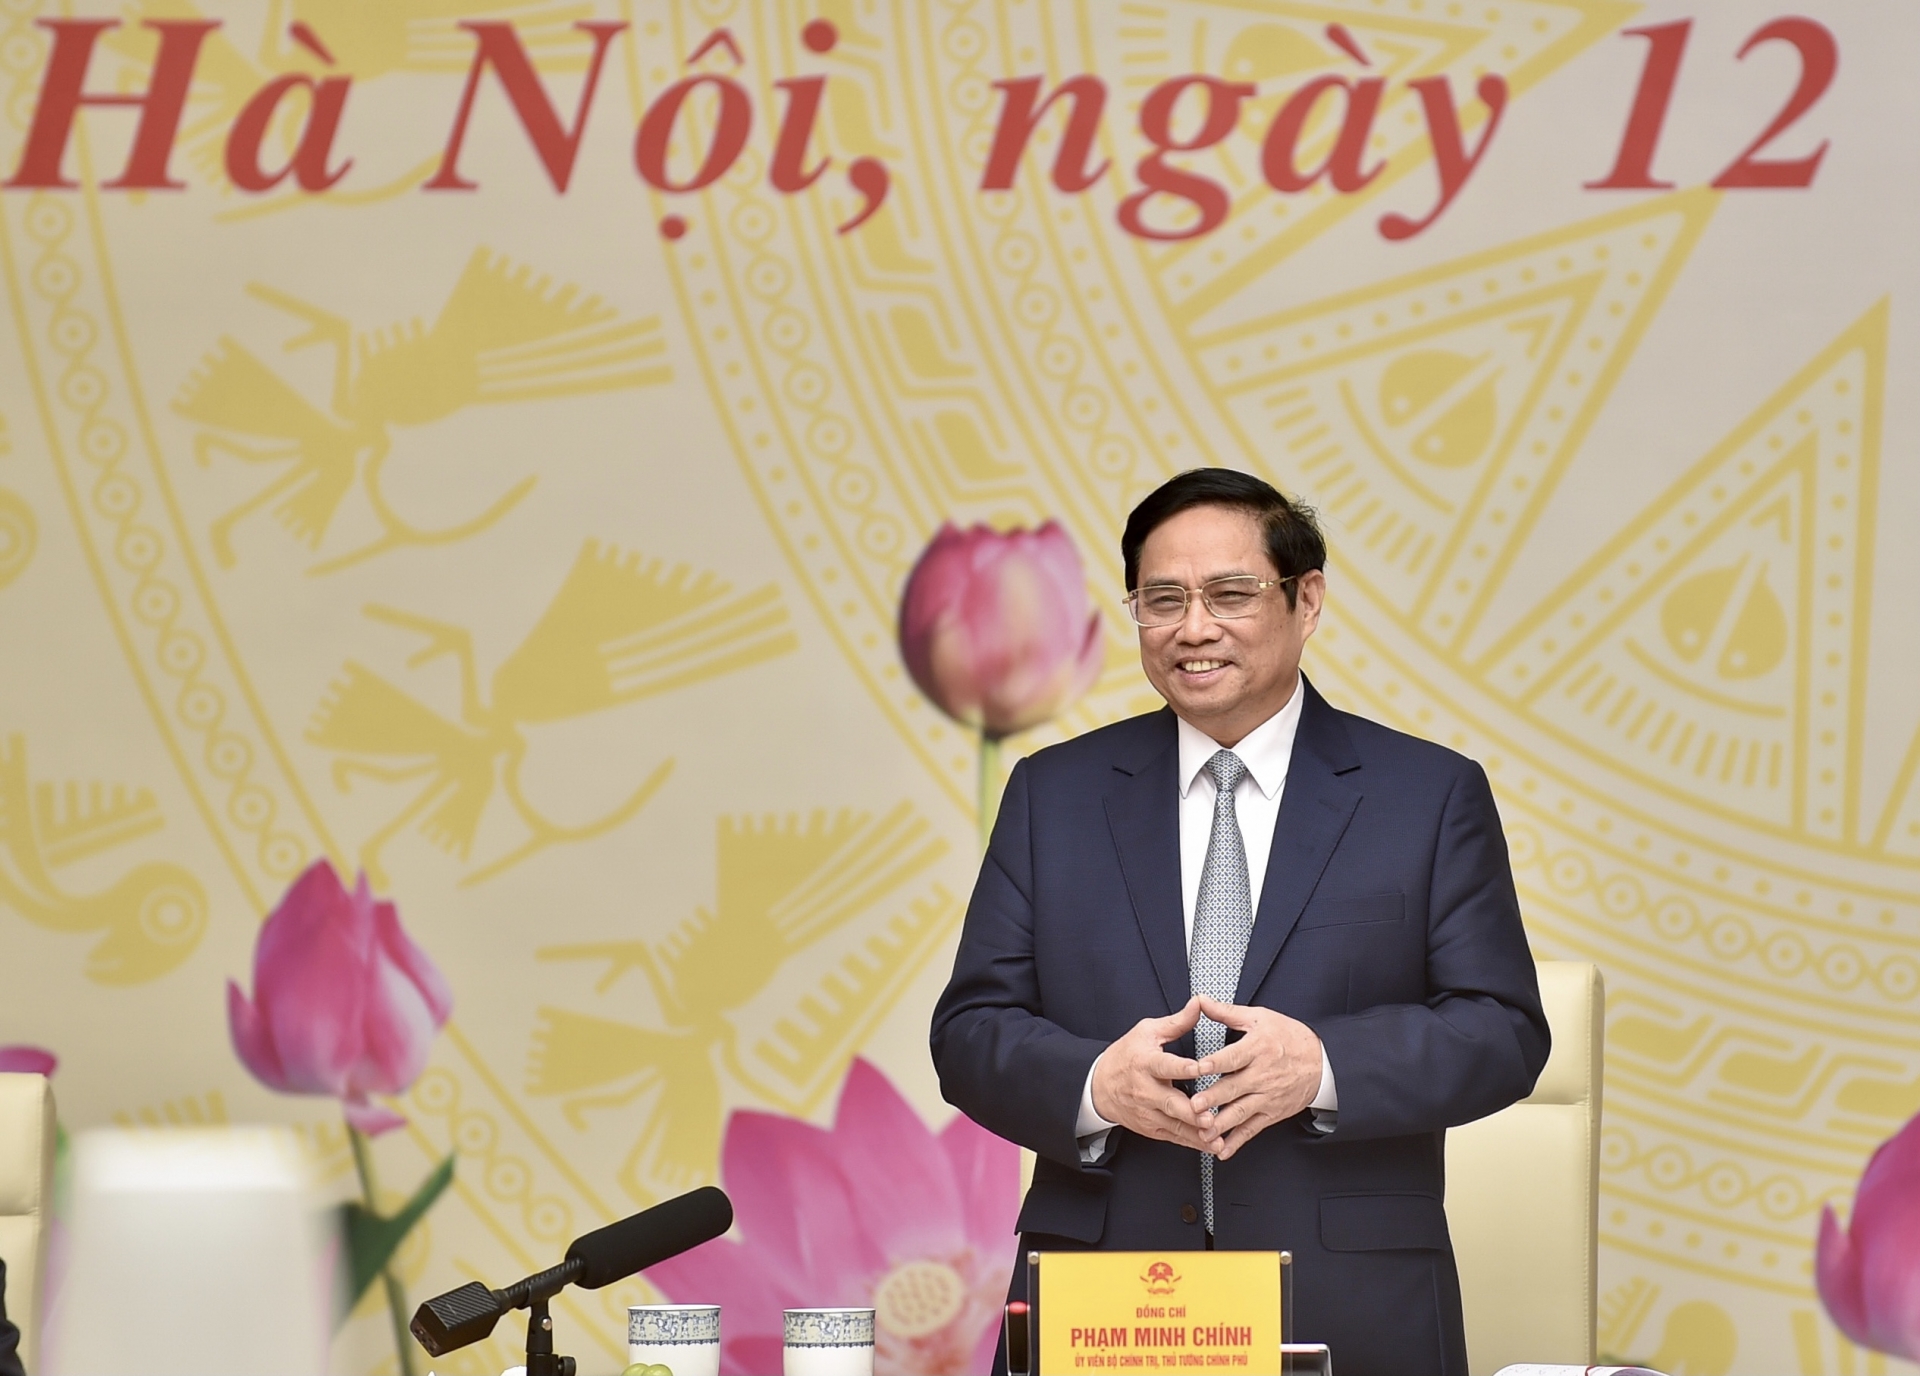 Thủ tướng Phạm Minh Chính: Những bài học, kinh nghiệm trong thời gian qua giúp chúng ta tự tin hơn trong việc thích ứng an toàn, linh hoạt, kiểm soát hiệu quả dịch bệnh